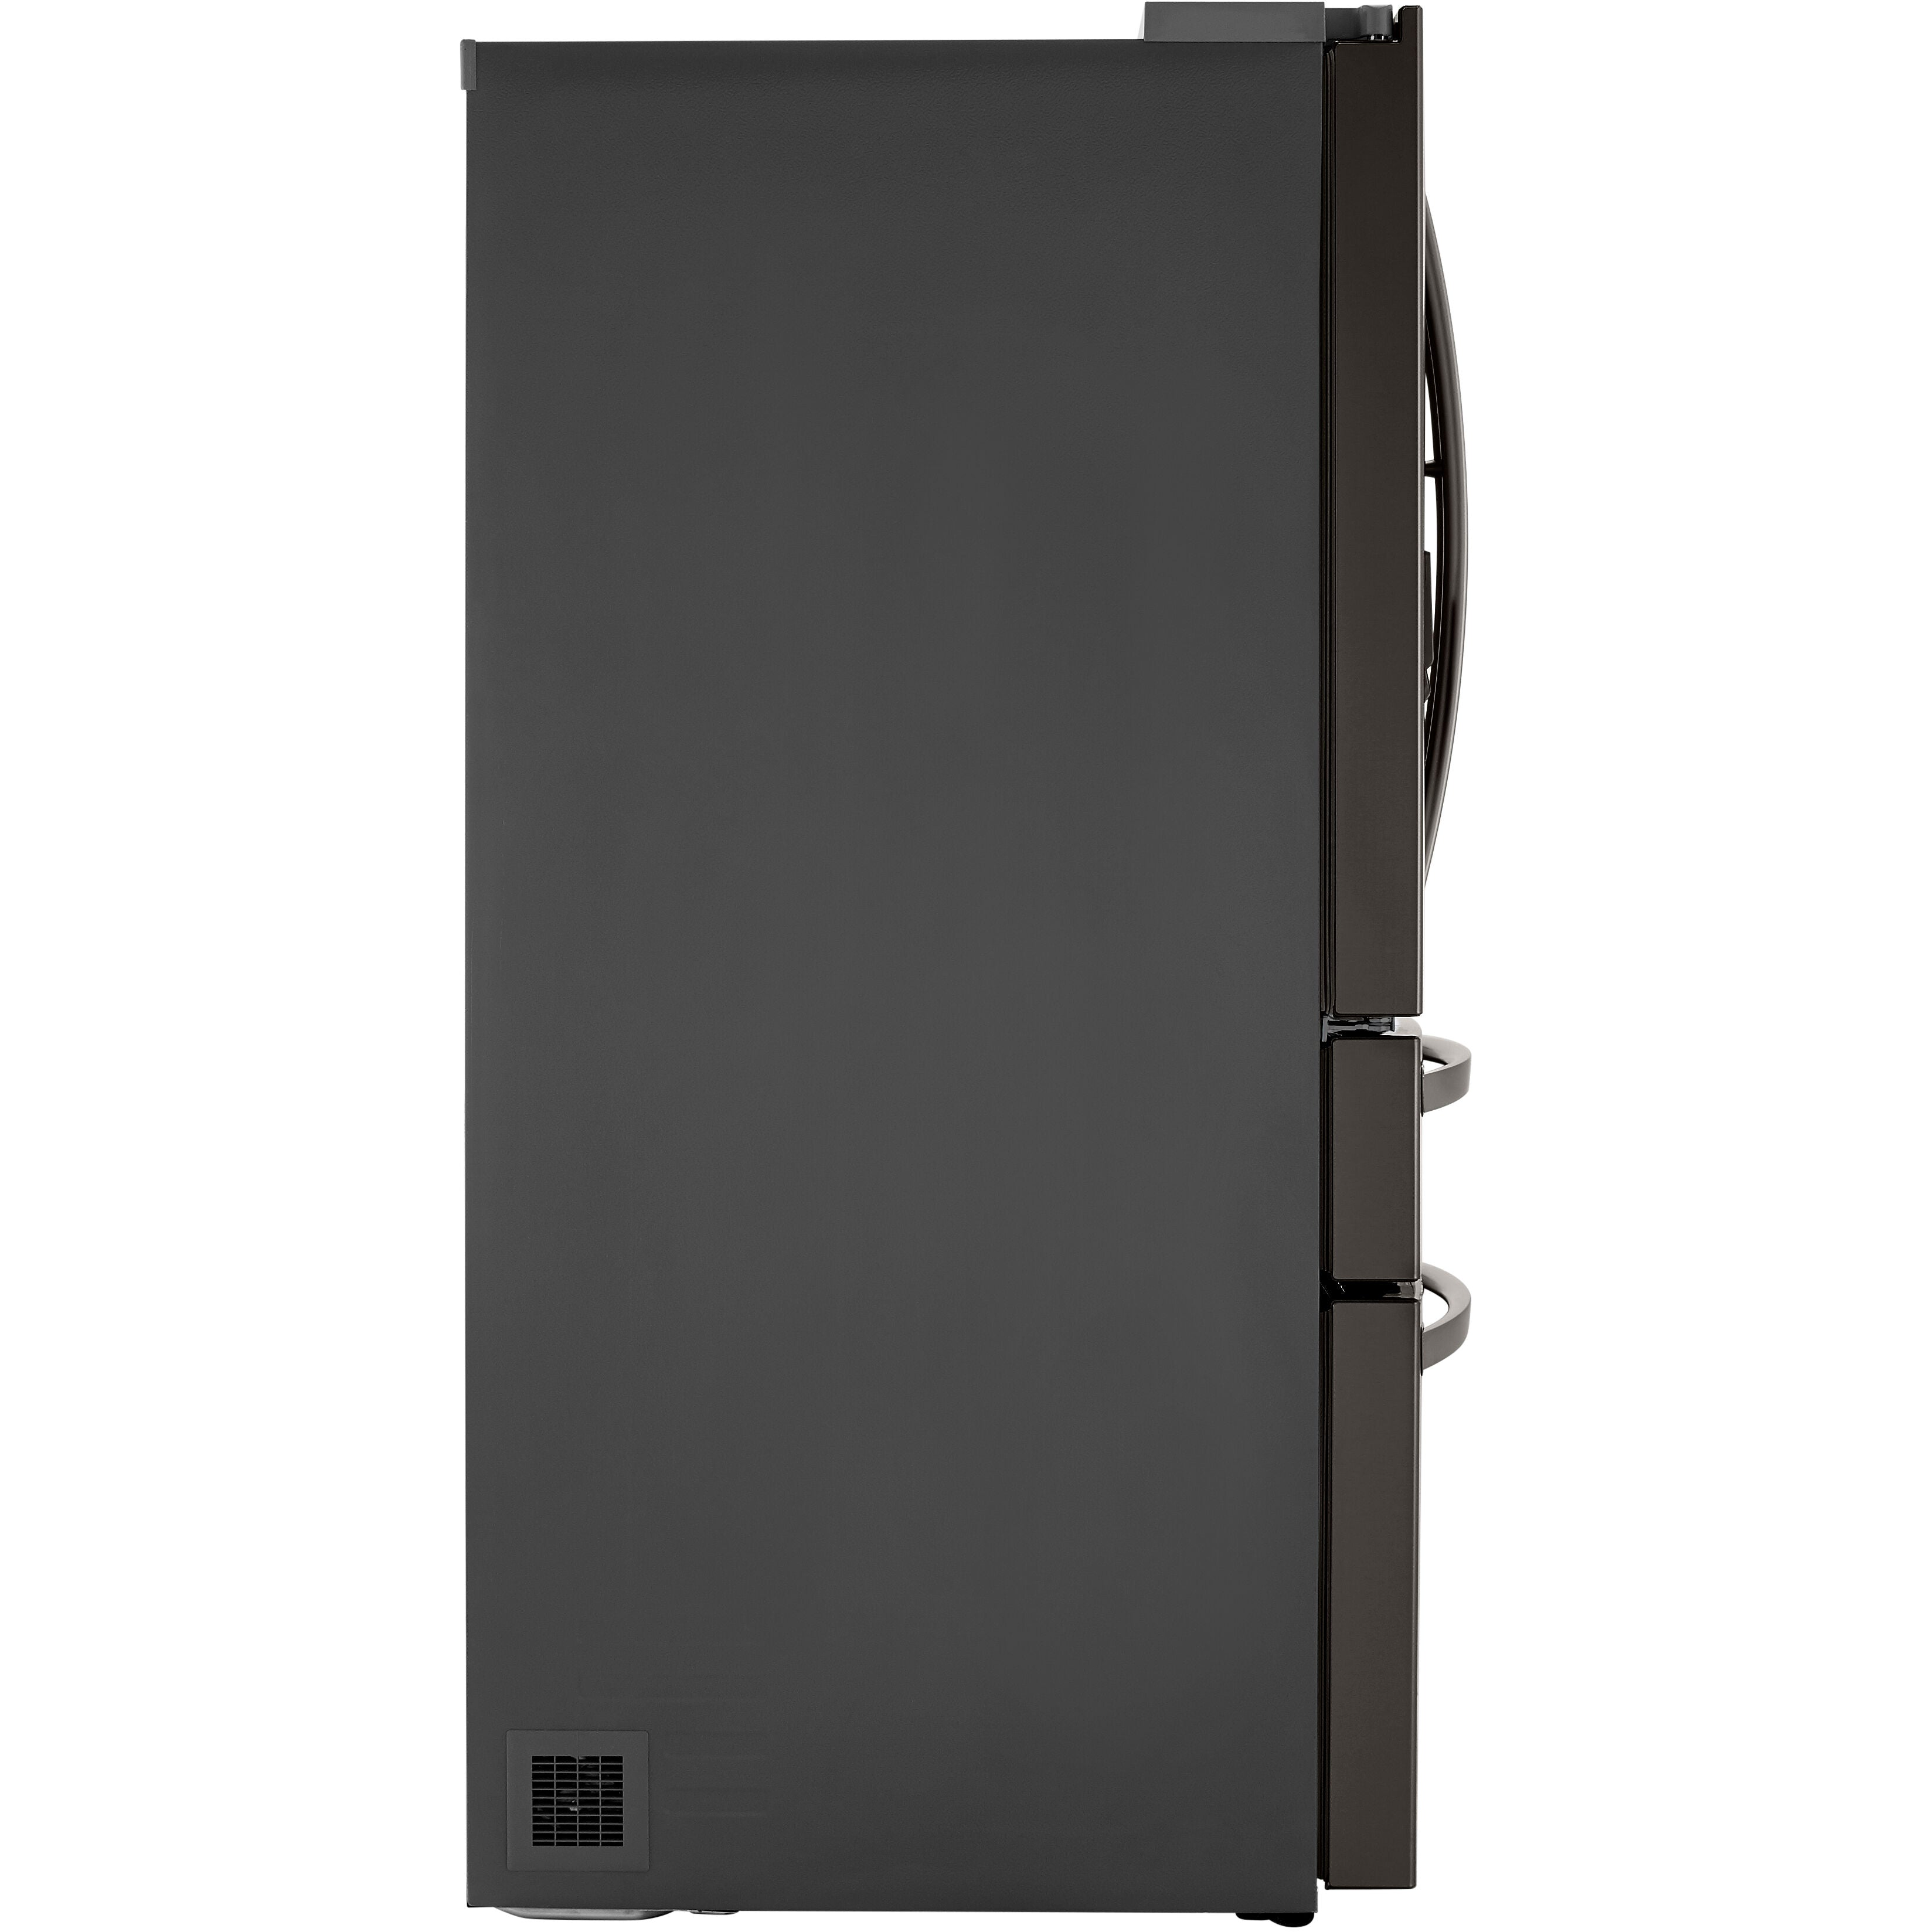 LG 36 Inch 4-Door French Door Refrigerator in Black Stainless Steel 30 Cu. Ft. (LRMDS3006D)